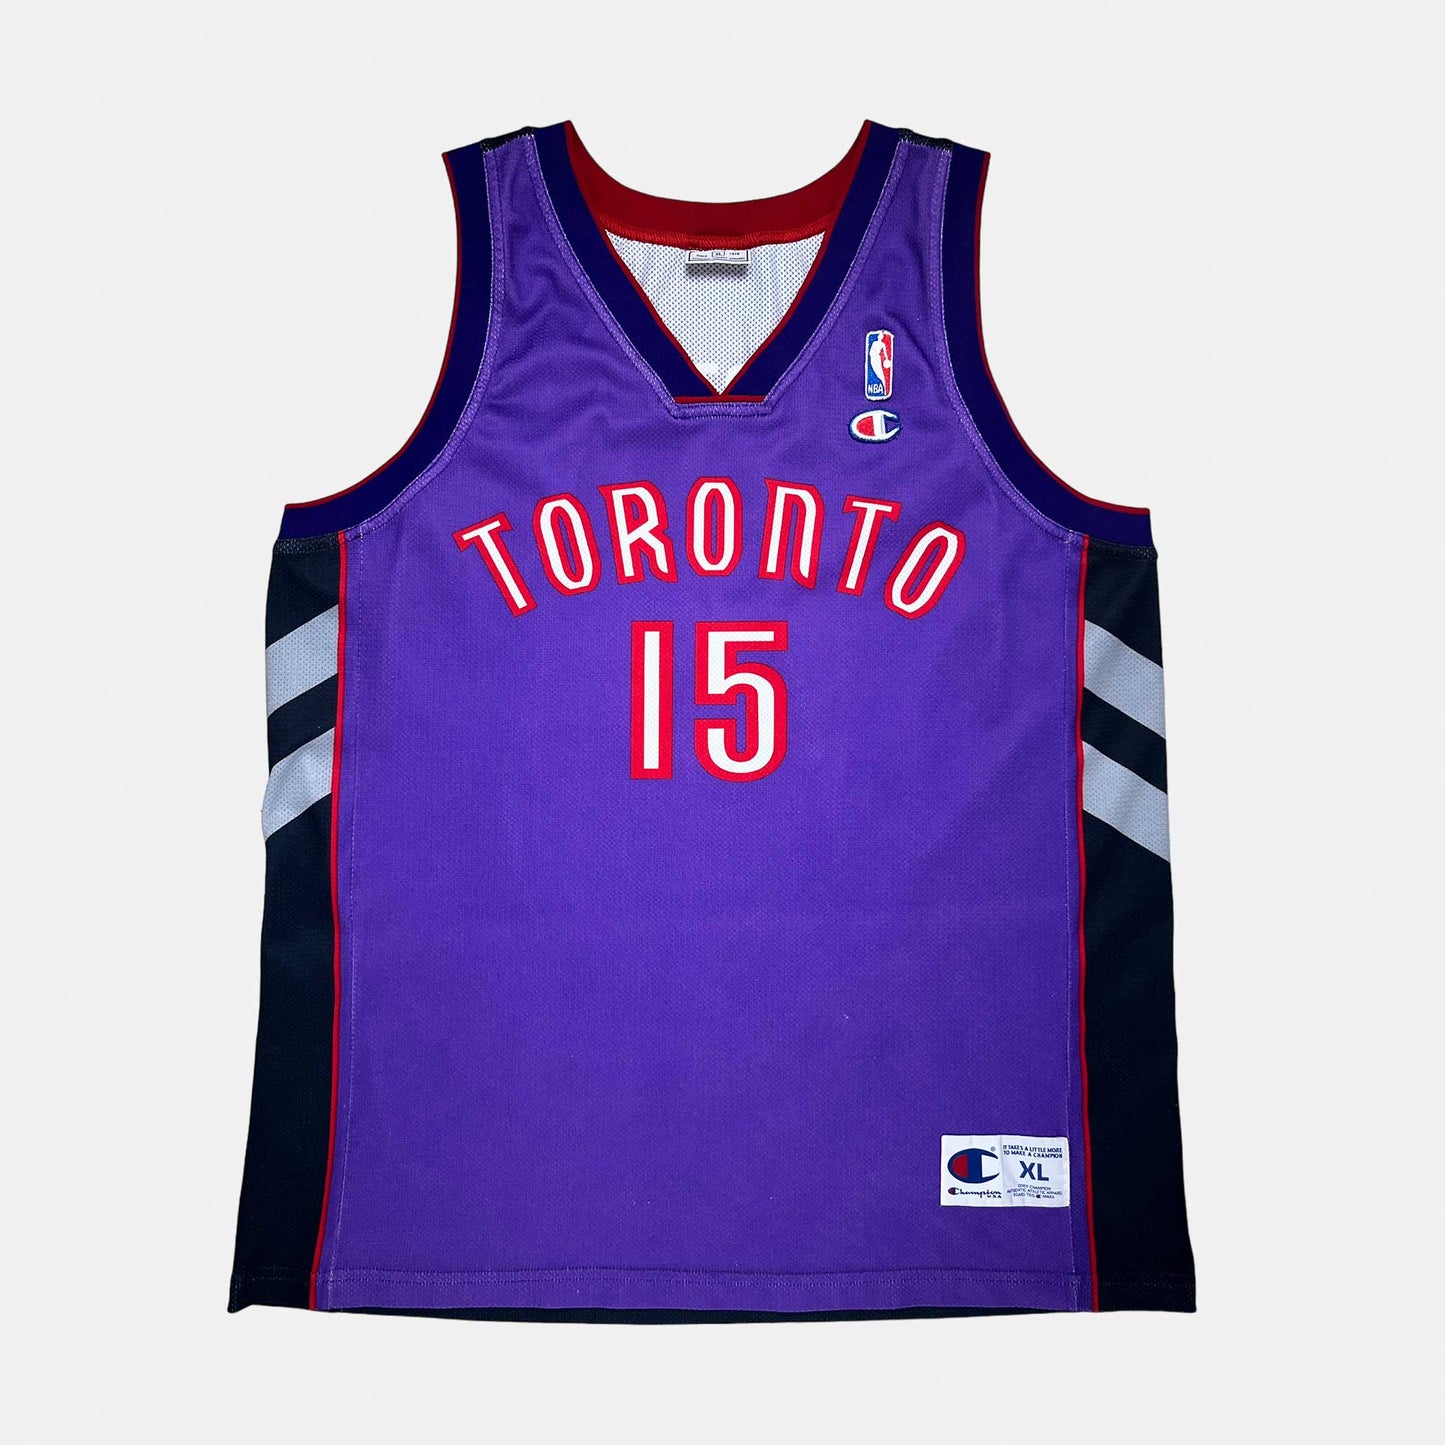 Toronto Raptors - Vince Carter - Größe XL - Champion - NBA Trikot